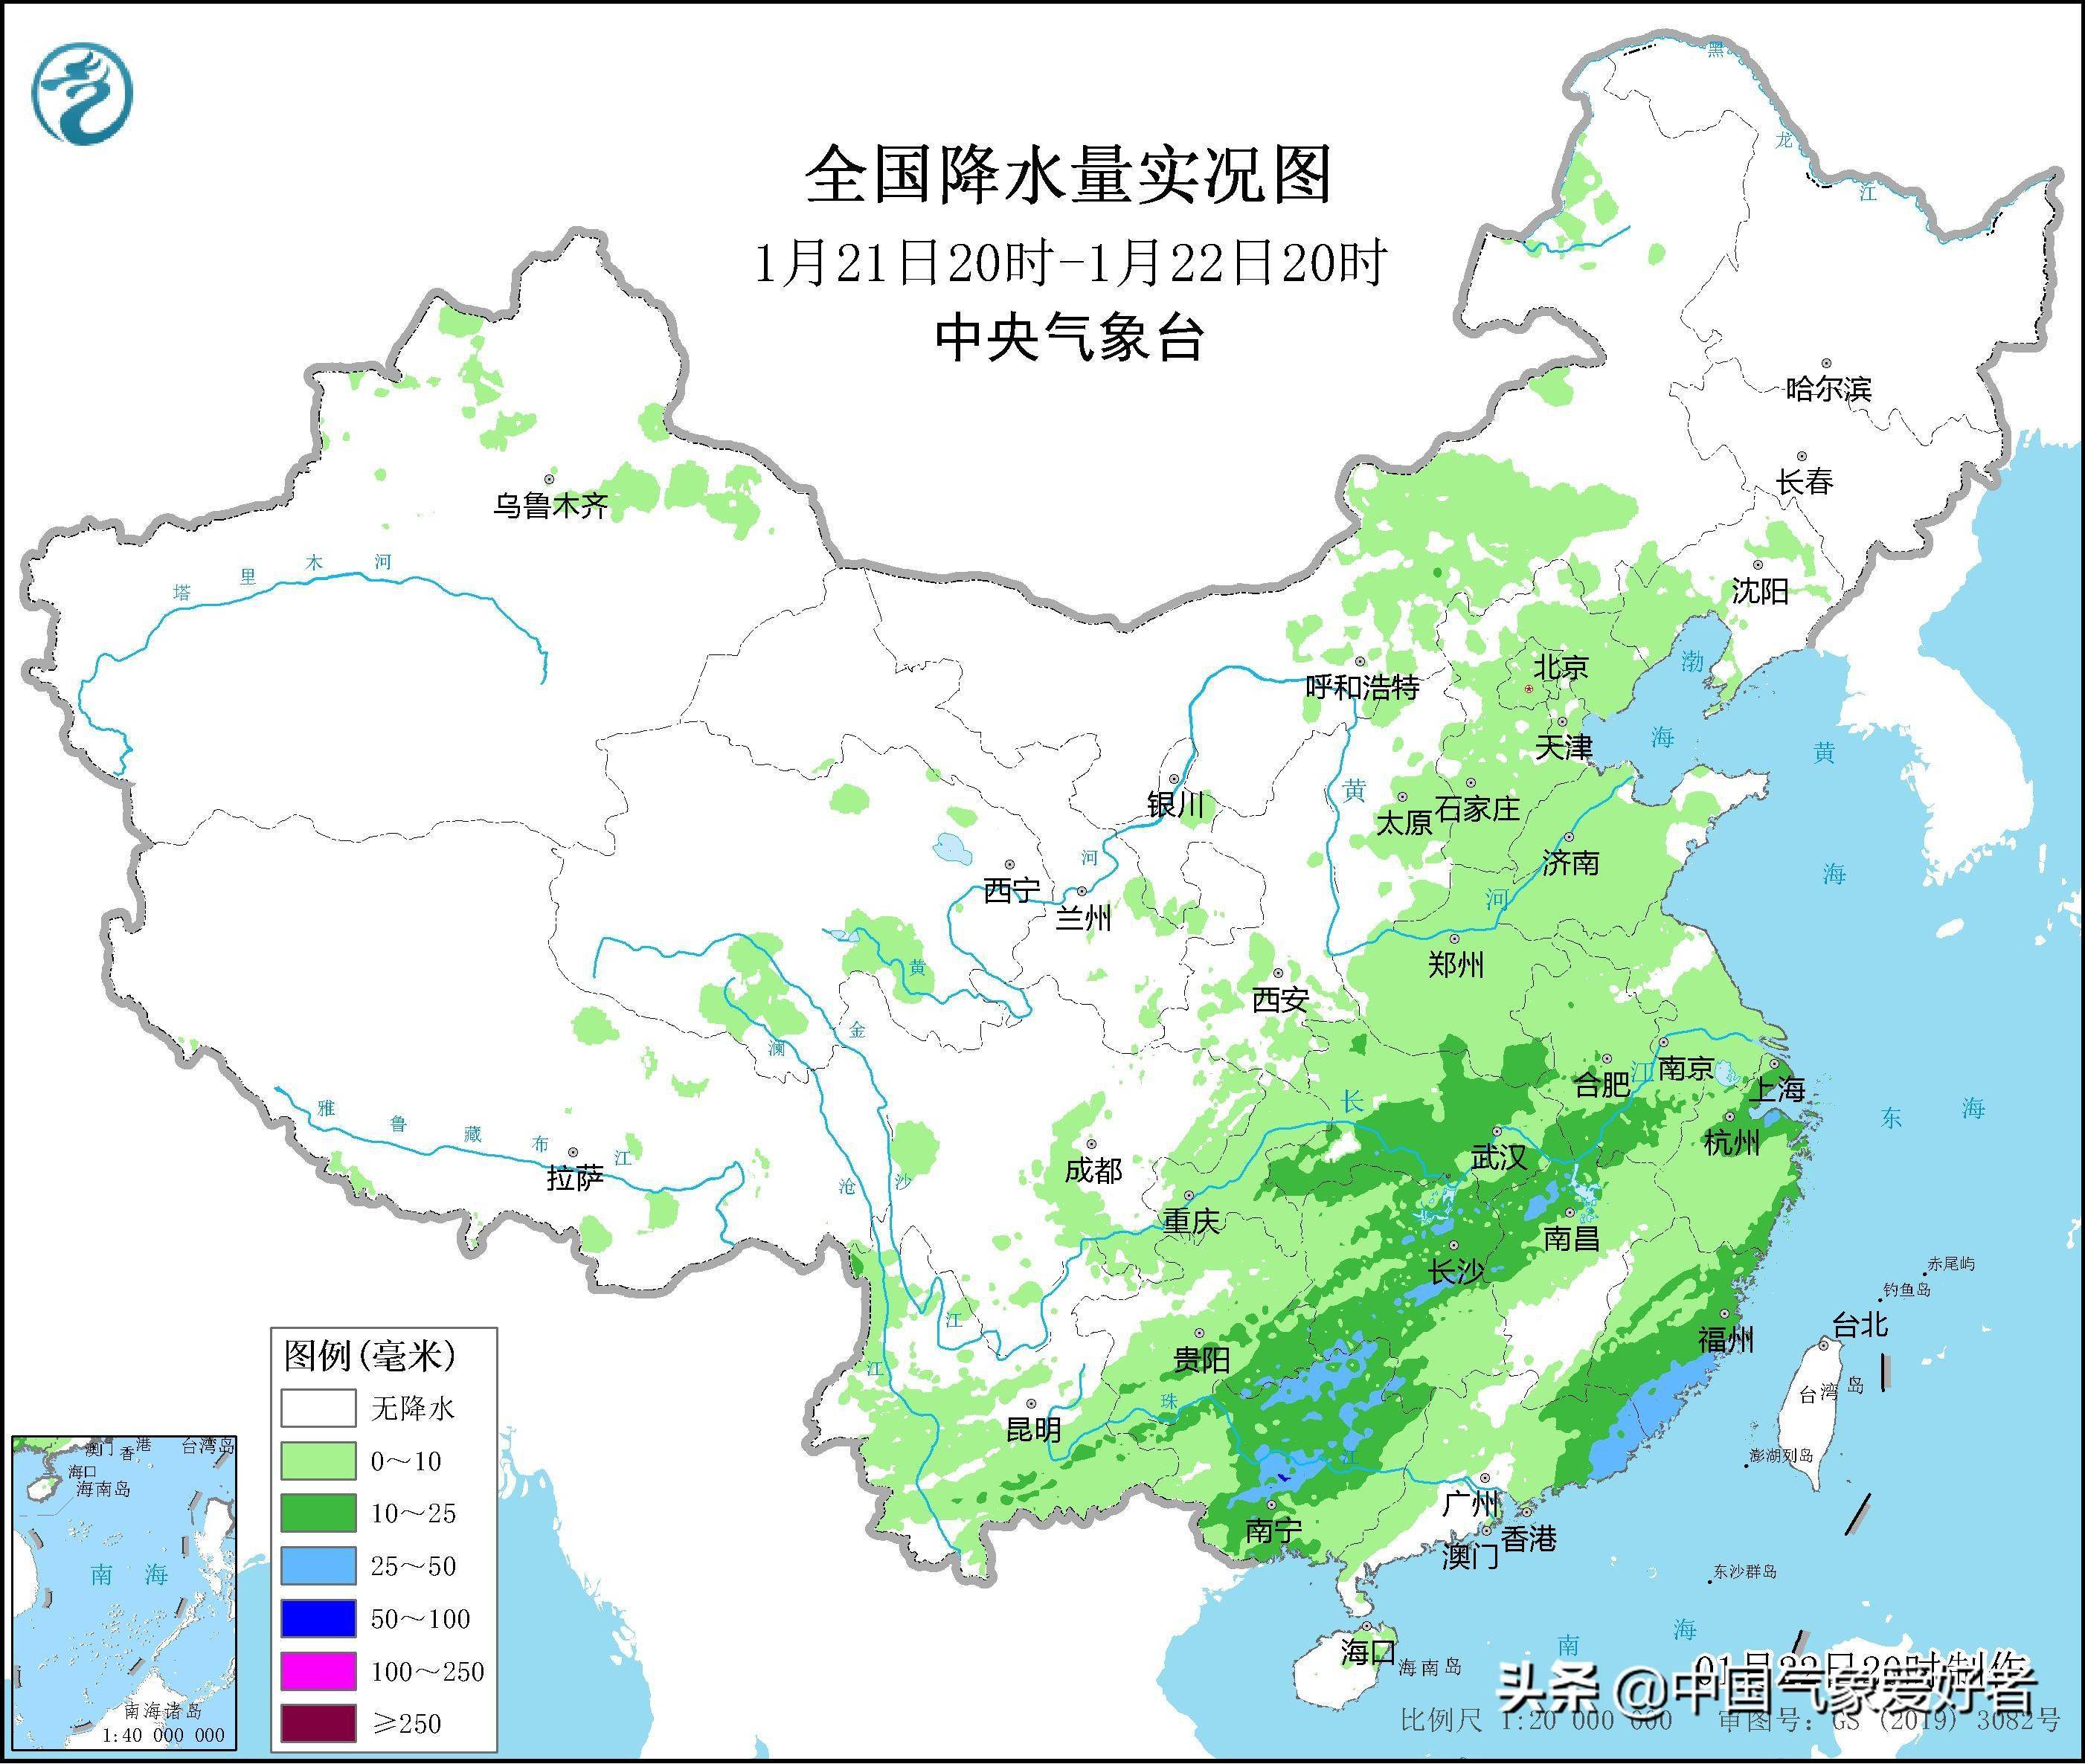 大范围大雨影响东南三省沙漠风险解除分析确实是好事